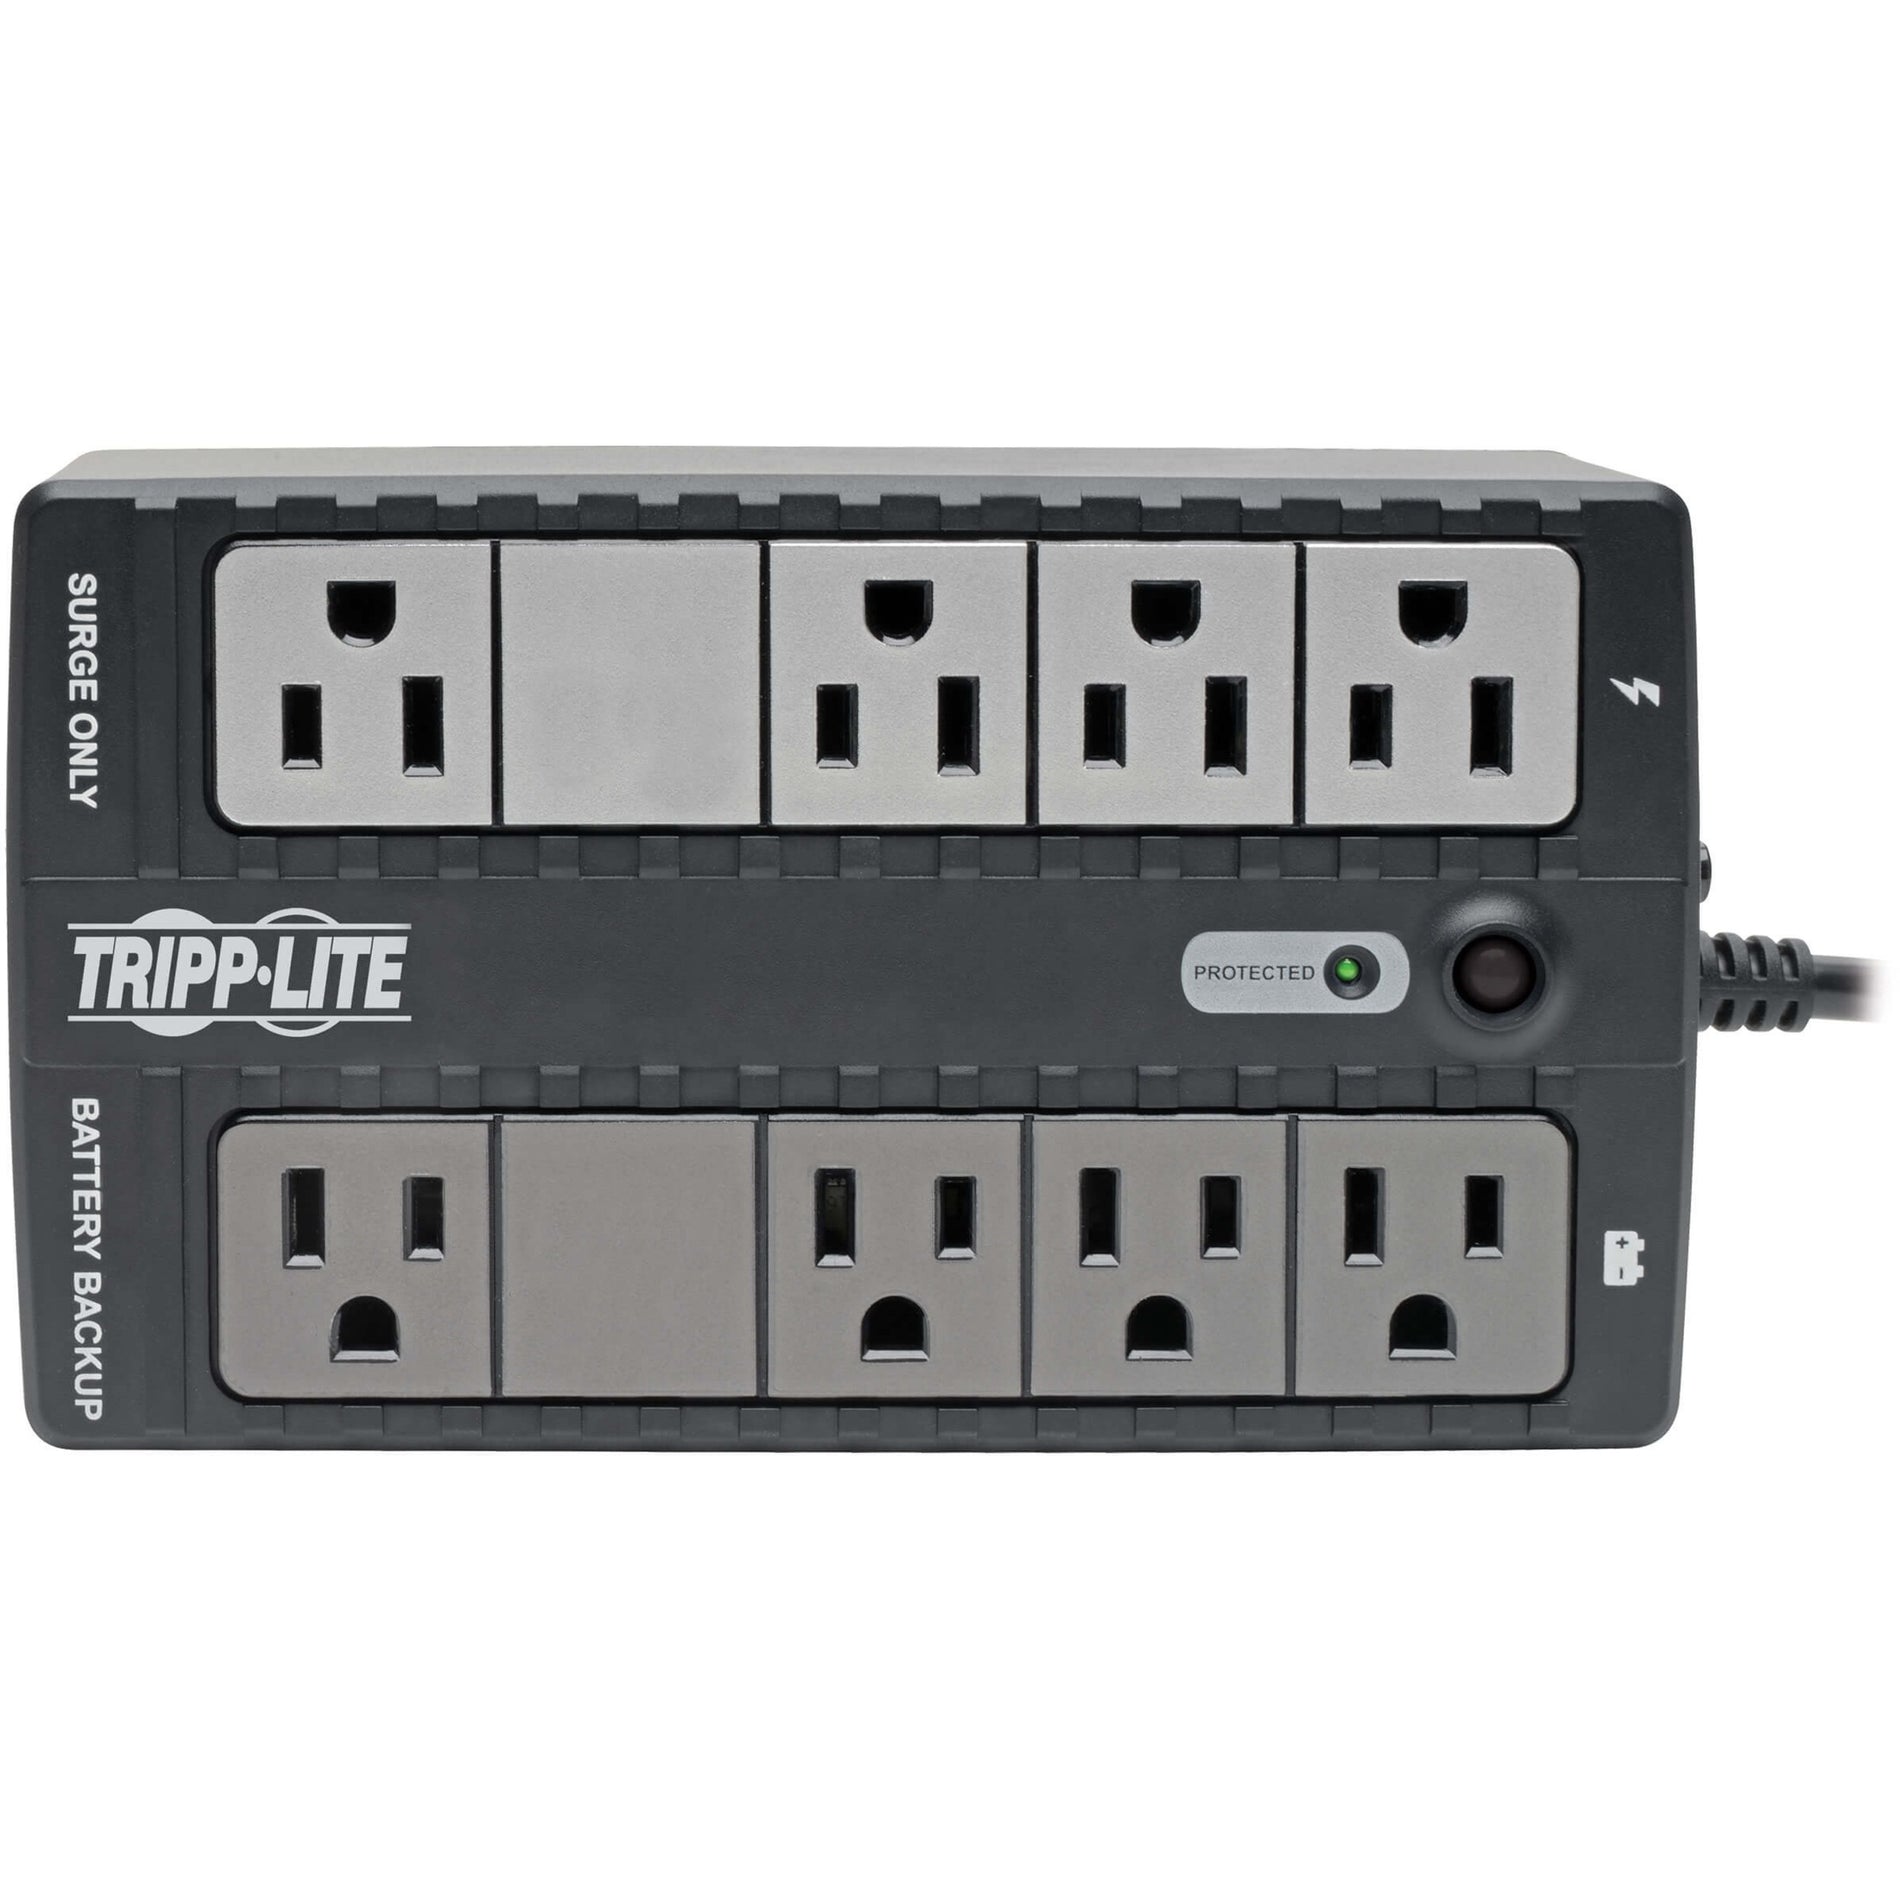 Tripp Lite INTERNET550SER Internet Office 550VA Wall-mountable Cabinet UPS, Battery Backup, 3 Year Warranty